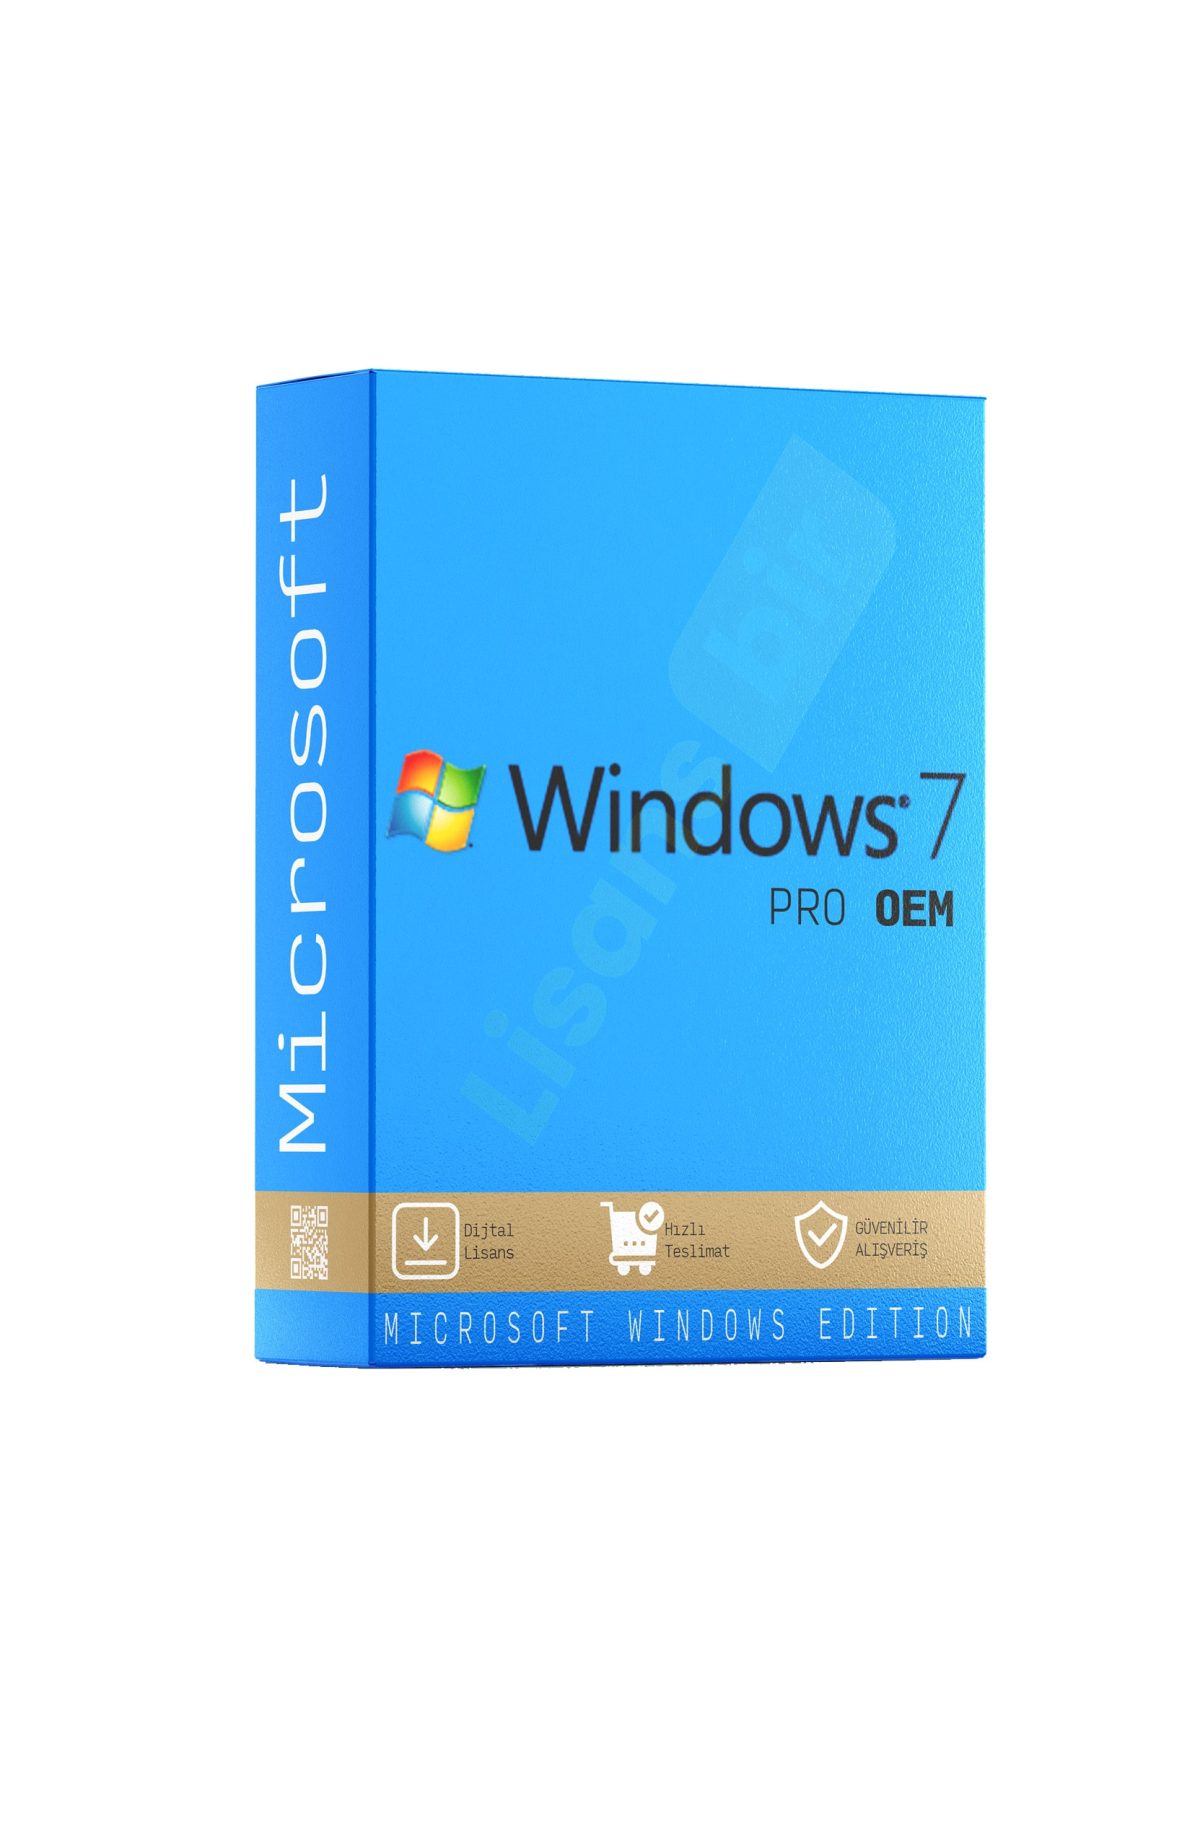 Windows 7 Professional OEM özellikleri ve çekici yönleri hakkında daha fazla bilgi için Lisansbir ürün sayfasını ziyaret edebilirsiniz.